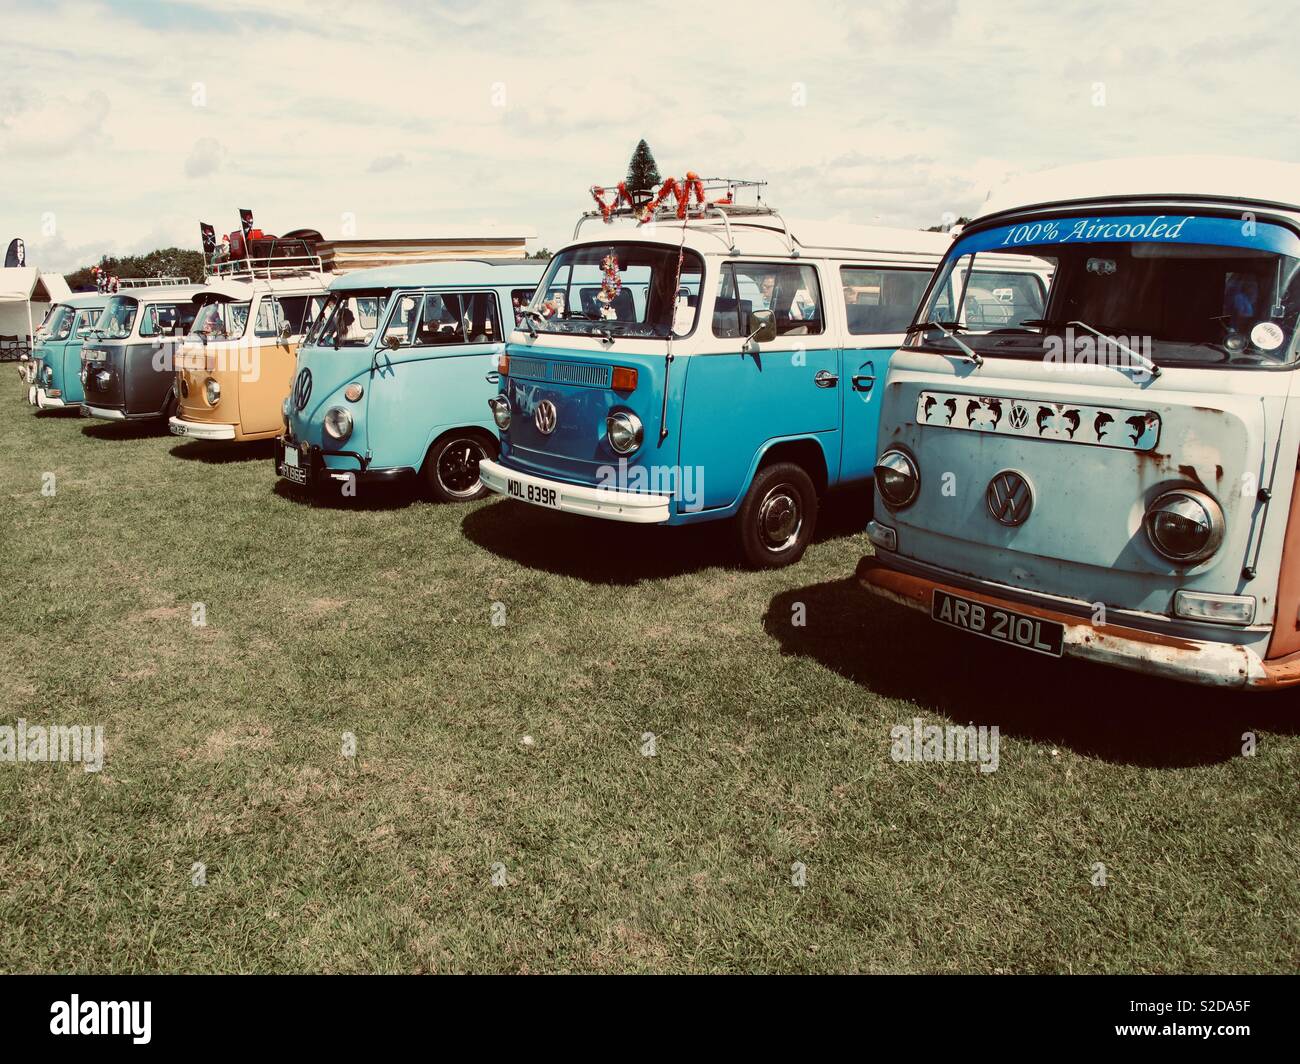 Volkswagen camper van line up at Vw show. Stock Photo